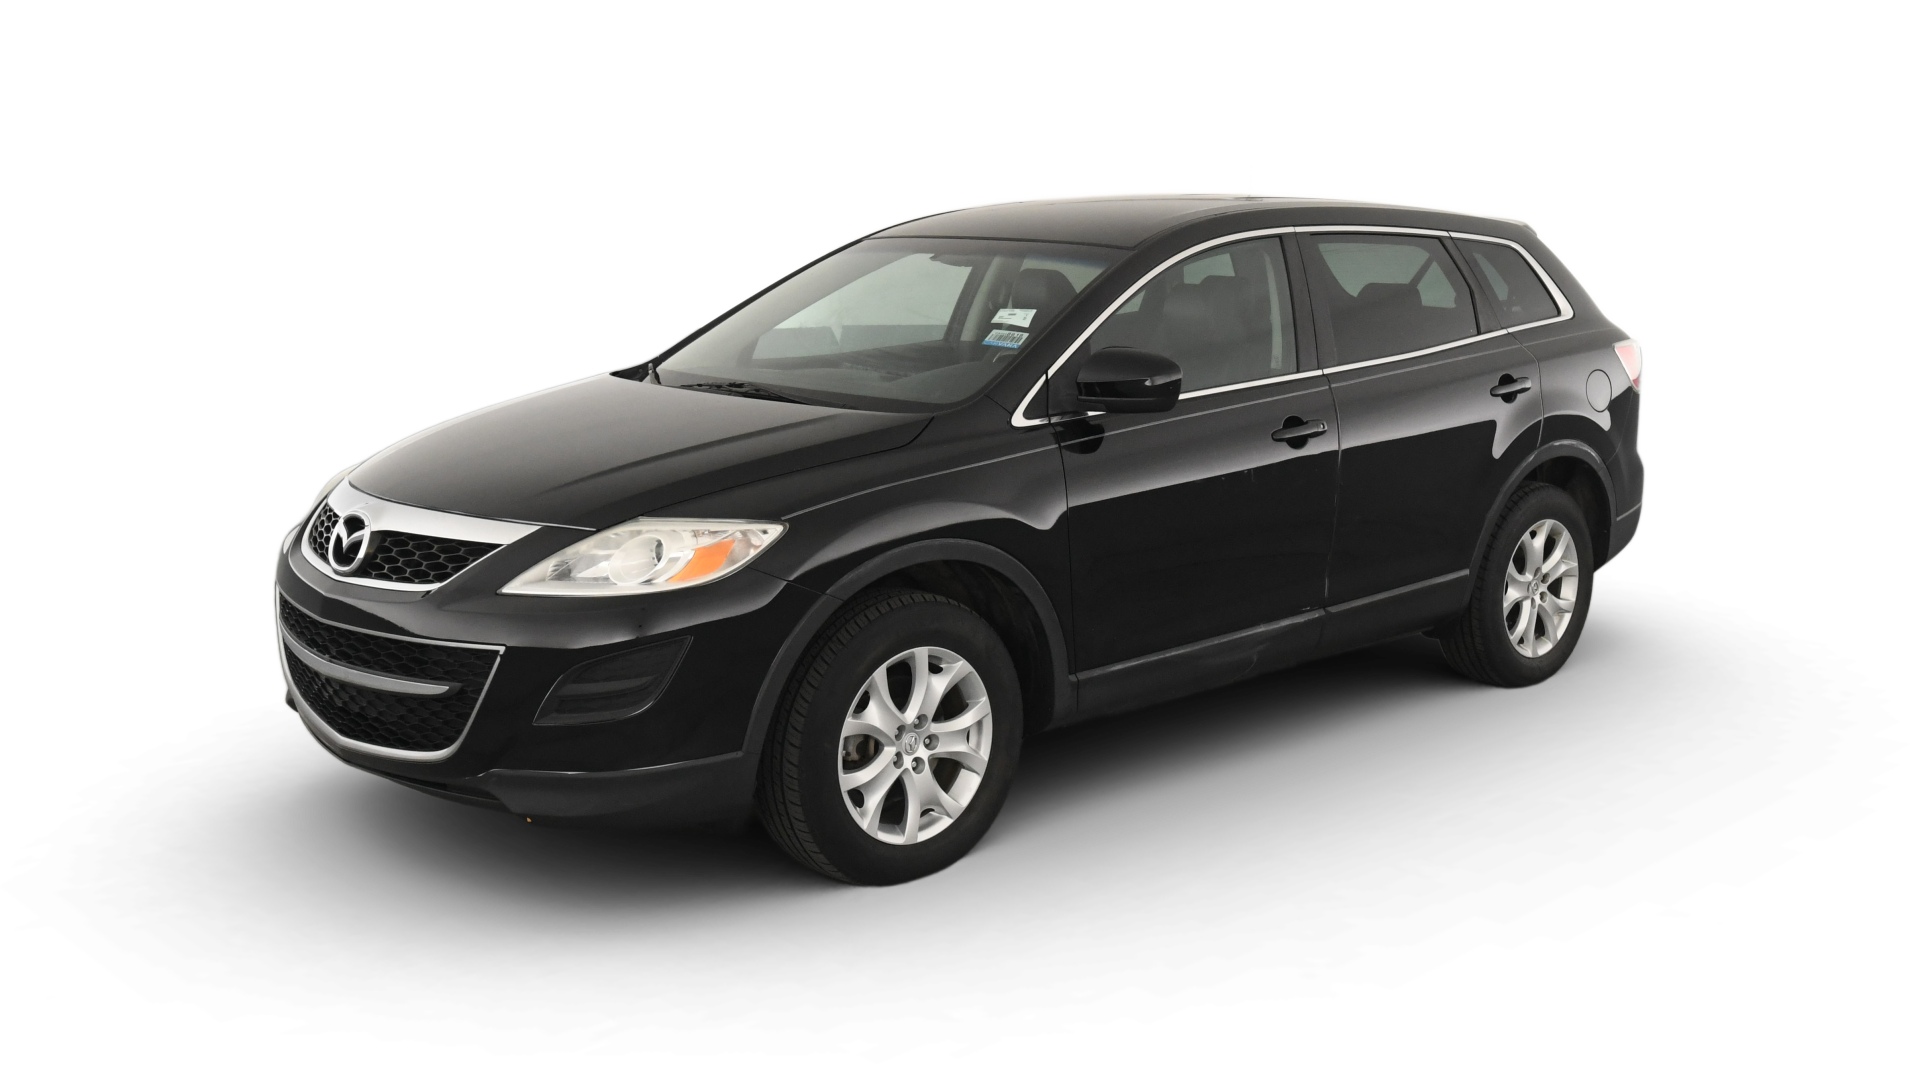 Used 2011 Mazda CX-9 For Sale Online | Carvana